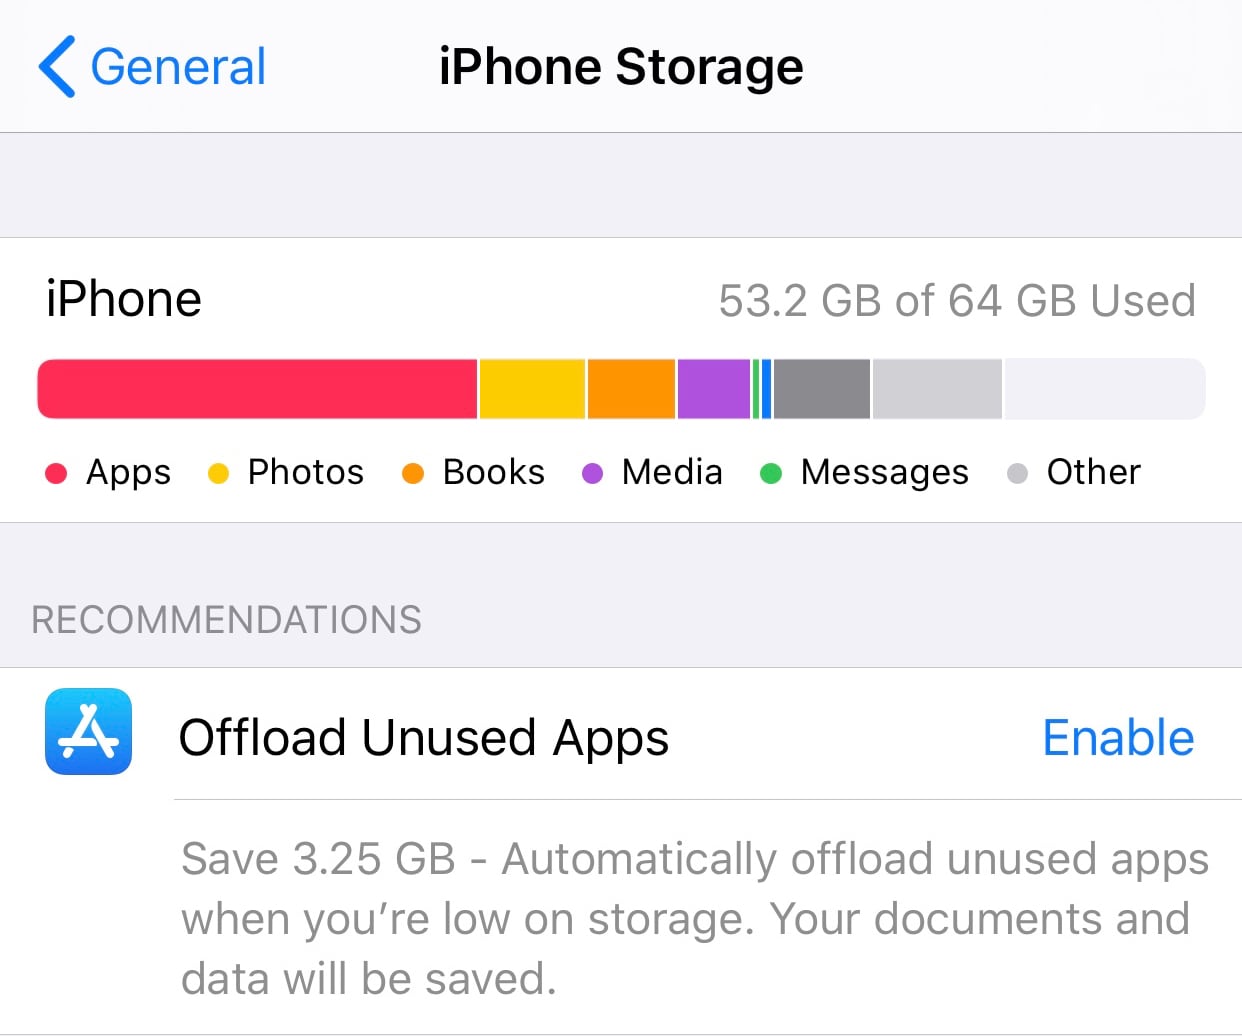 iPhone Storage breakdown